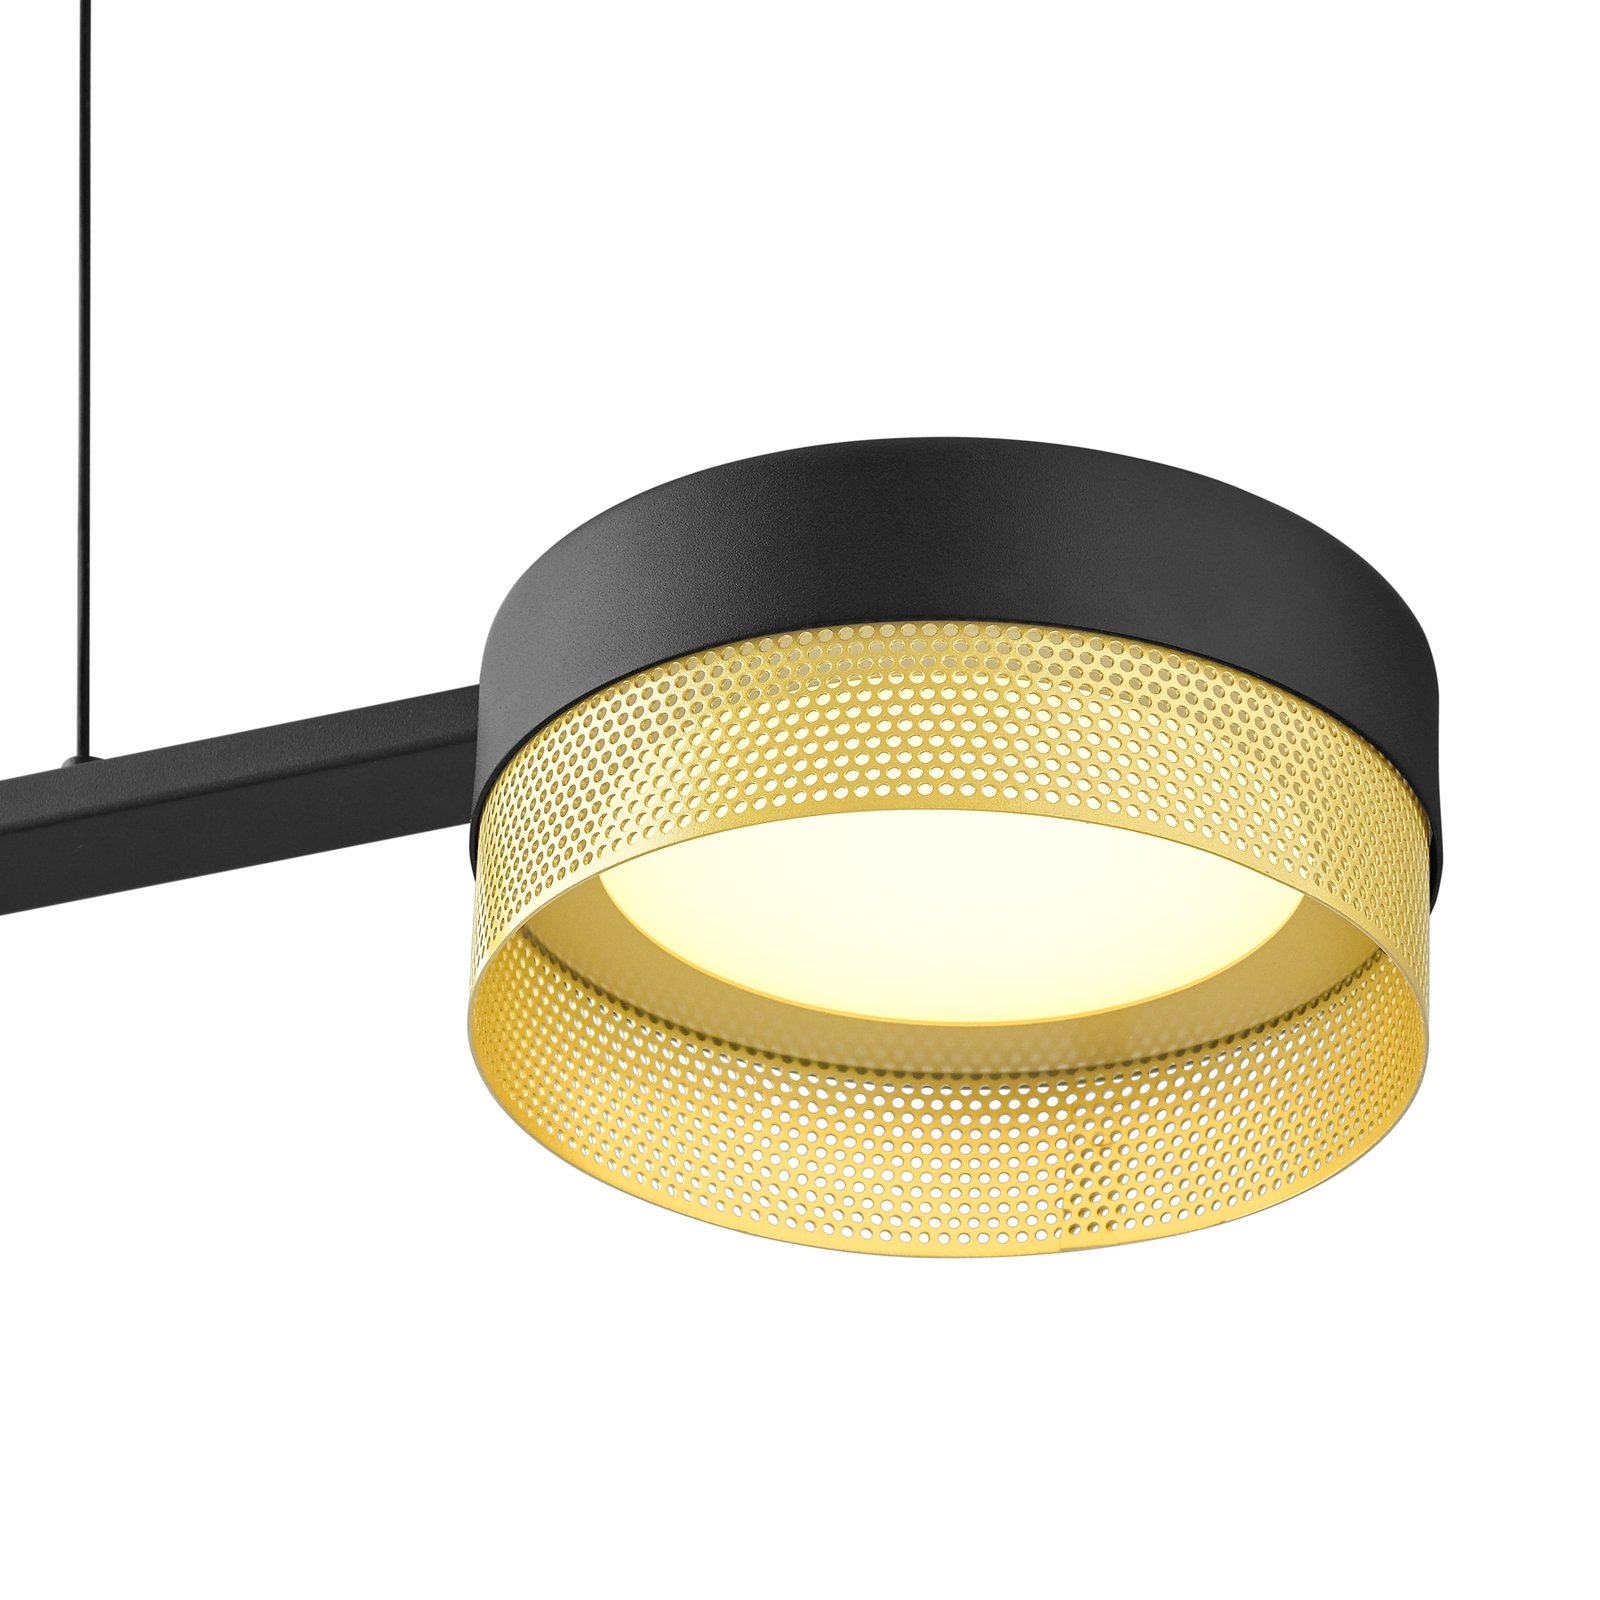 Mesh LED pendant light 3-bulb dimmer, black/gold